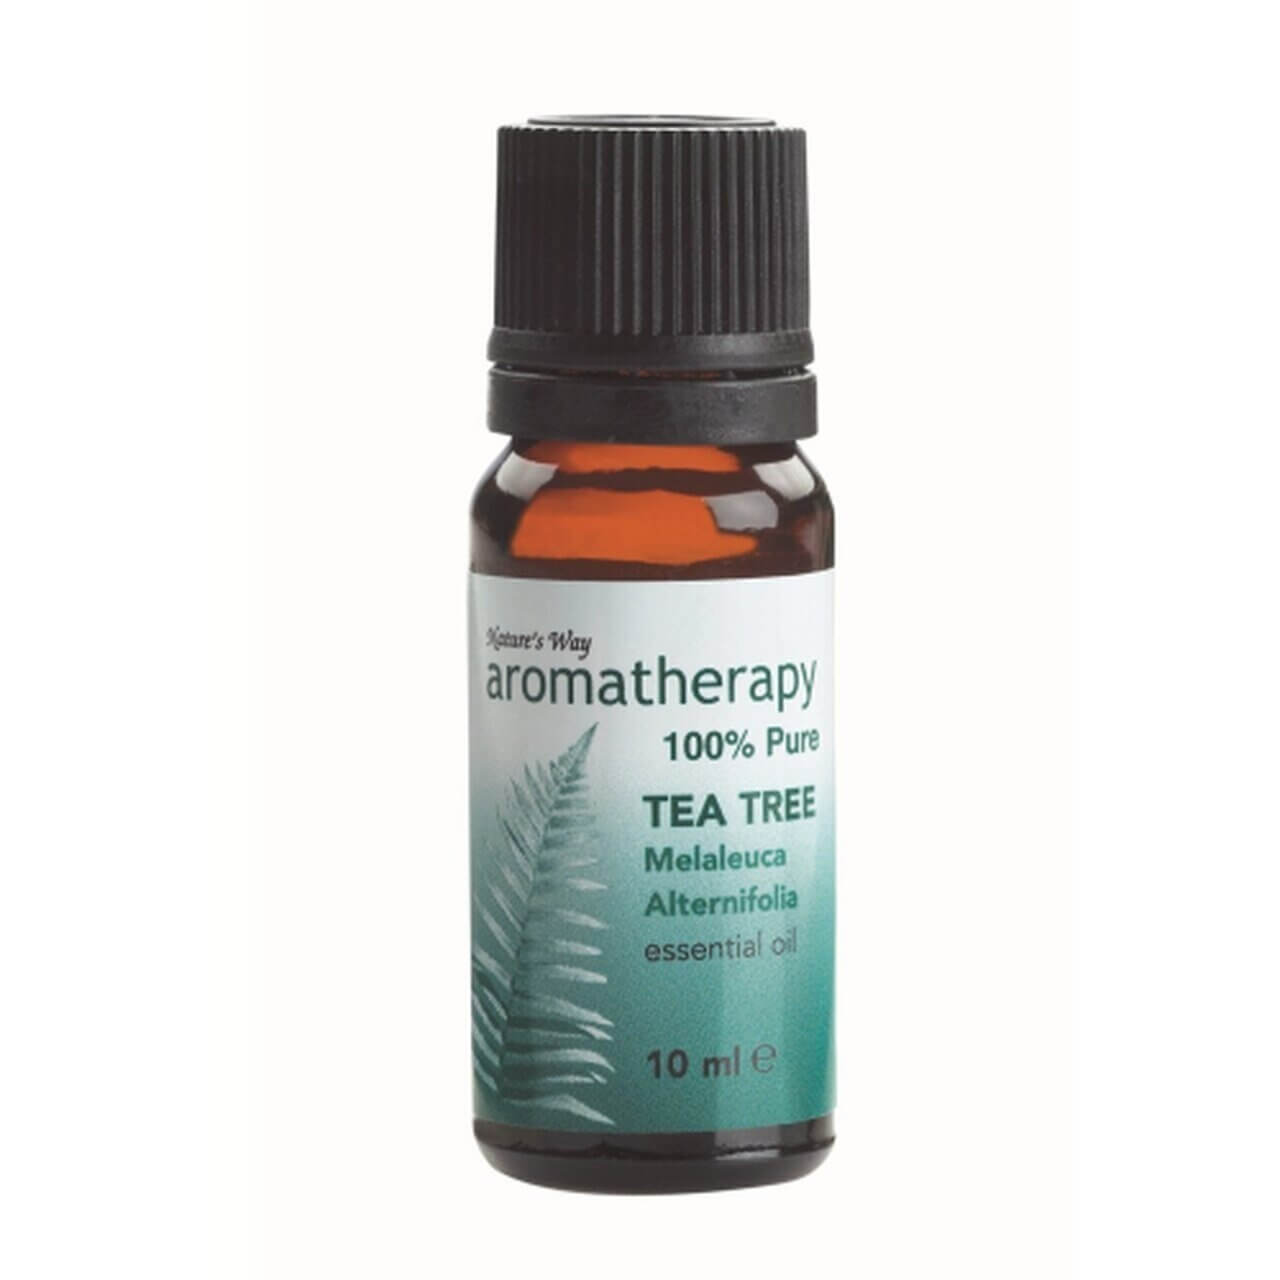 Aromatherapy Oil Natures Way Tea Tree 10ml